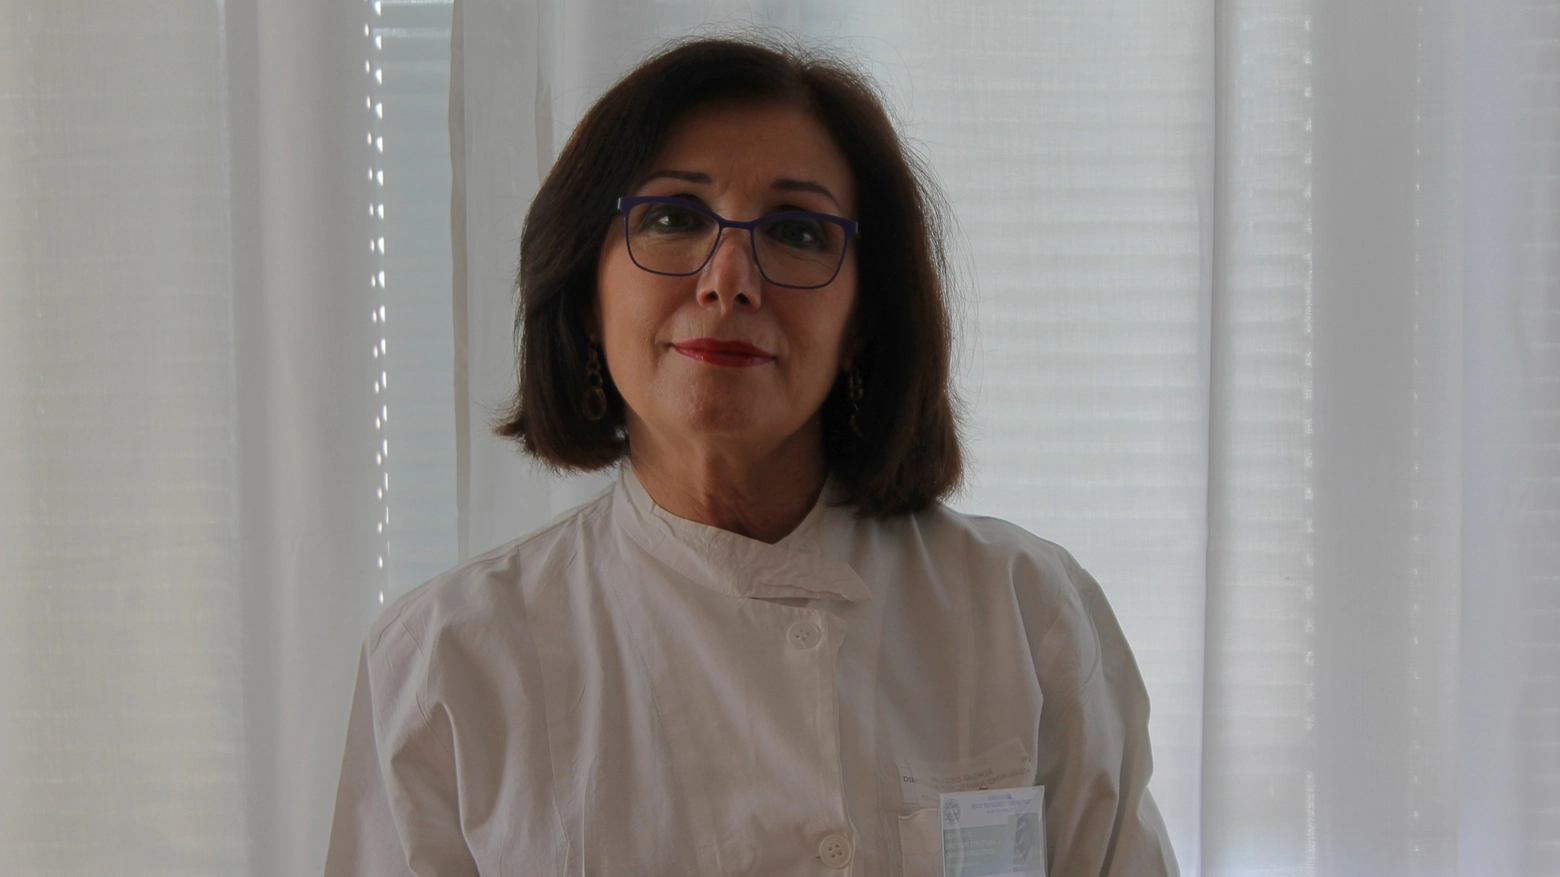 La professoressa Giovanna Riccipetitoni, direttore chirurgia pediatrica del San Matteo